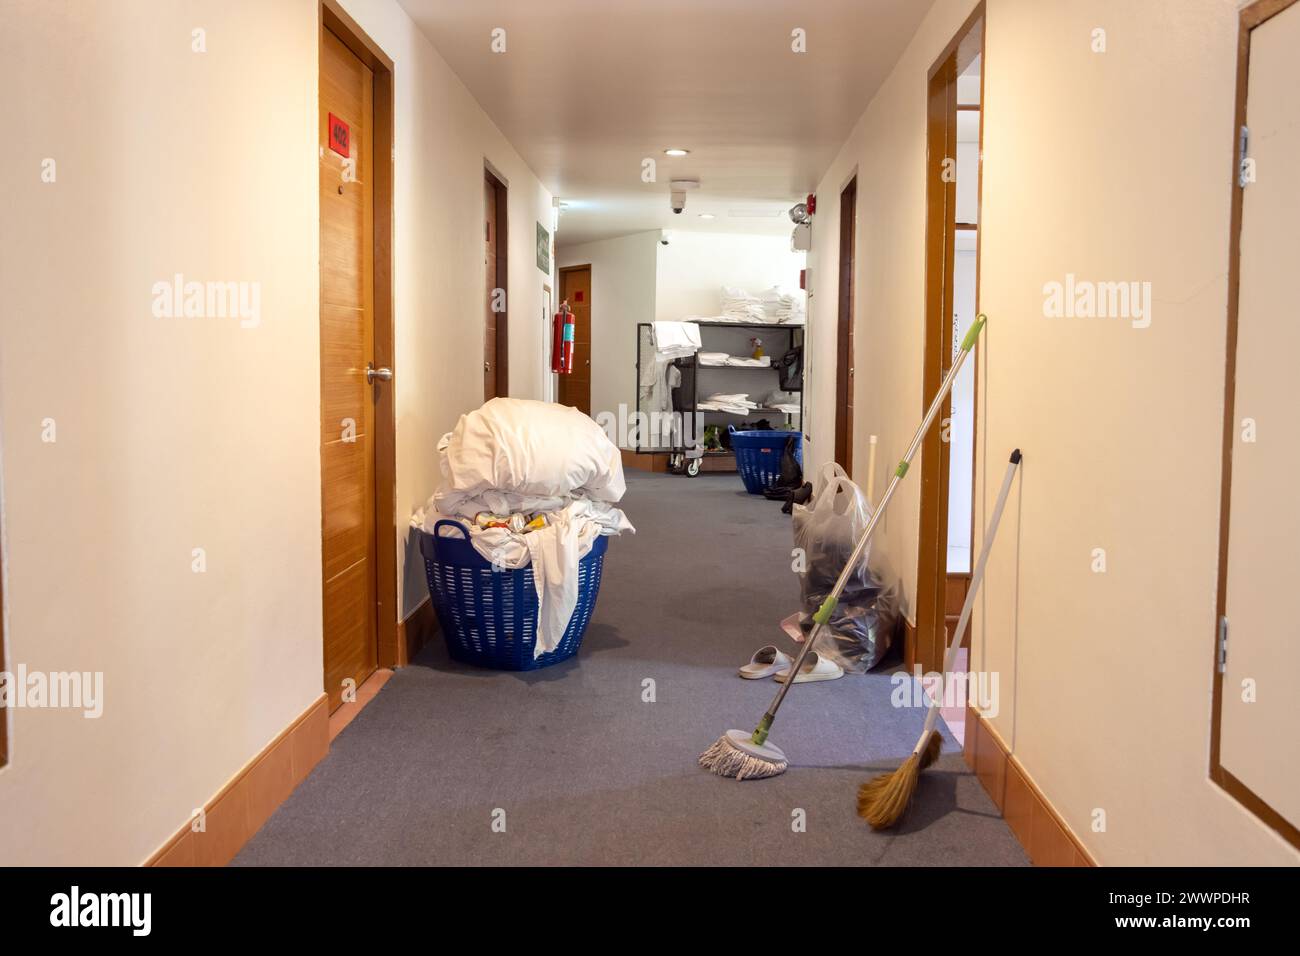 EQUIPEMENT pour nettoyer les chambres dans le couloir de l'hôtel Banque D'Images